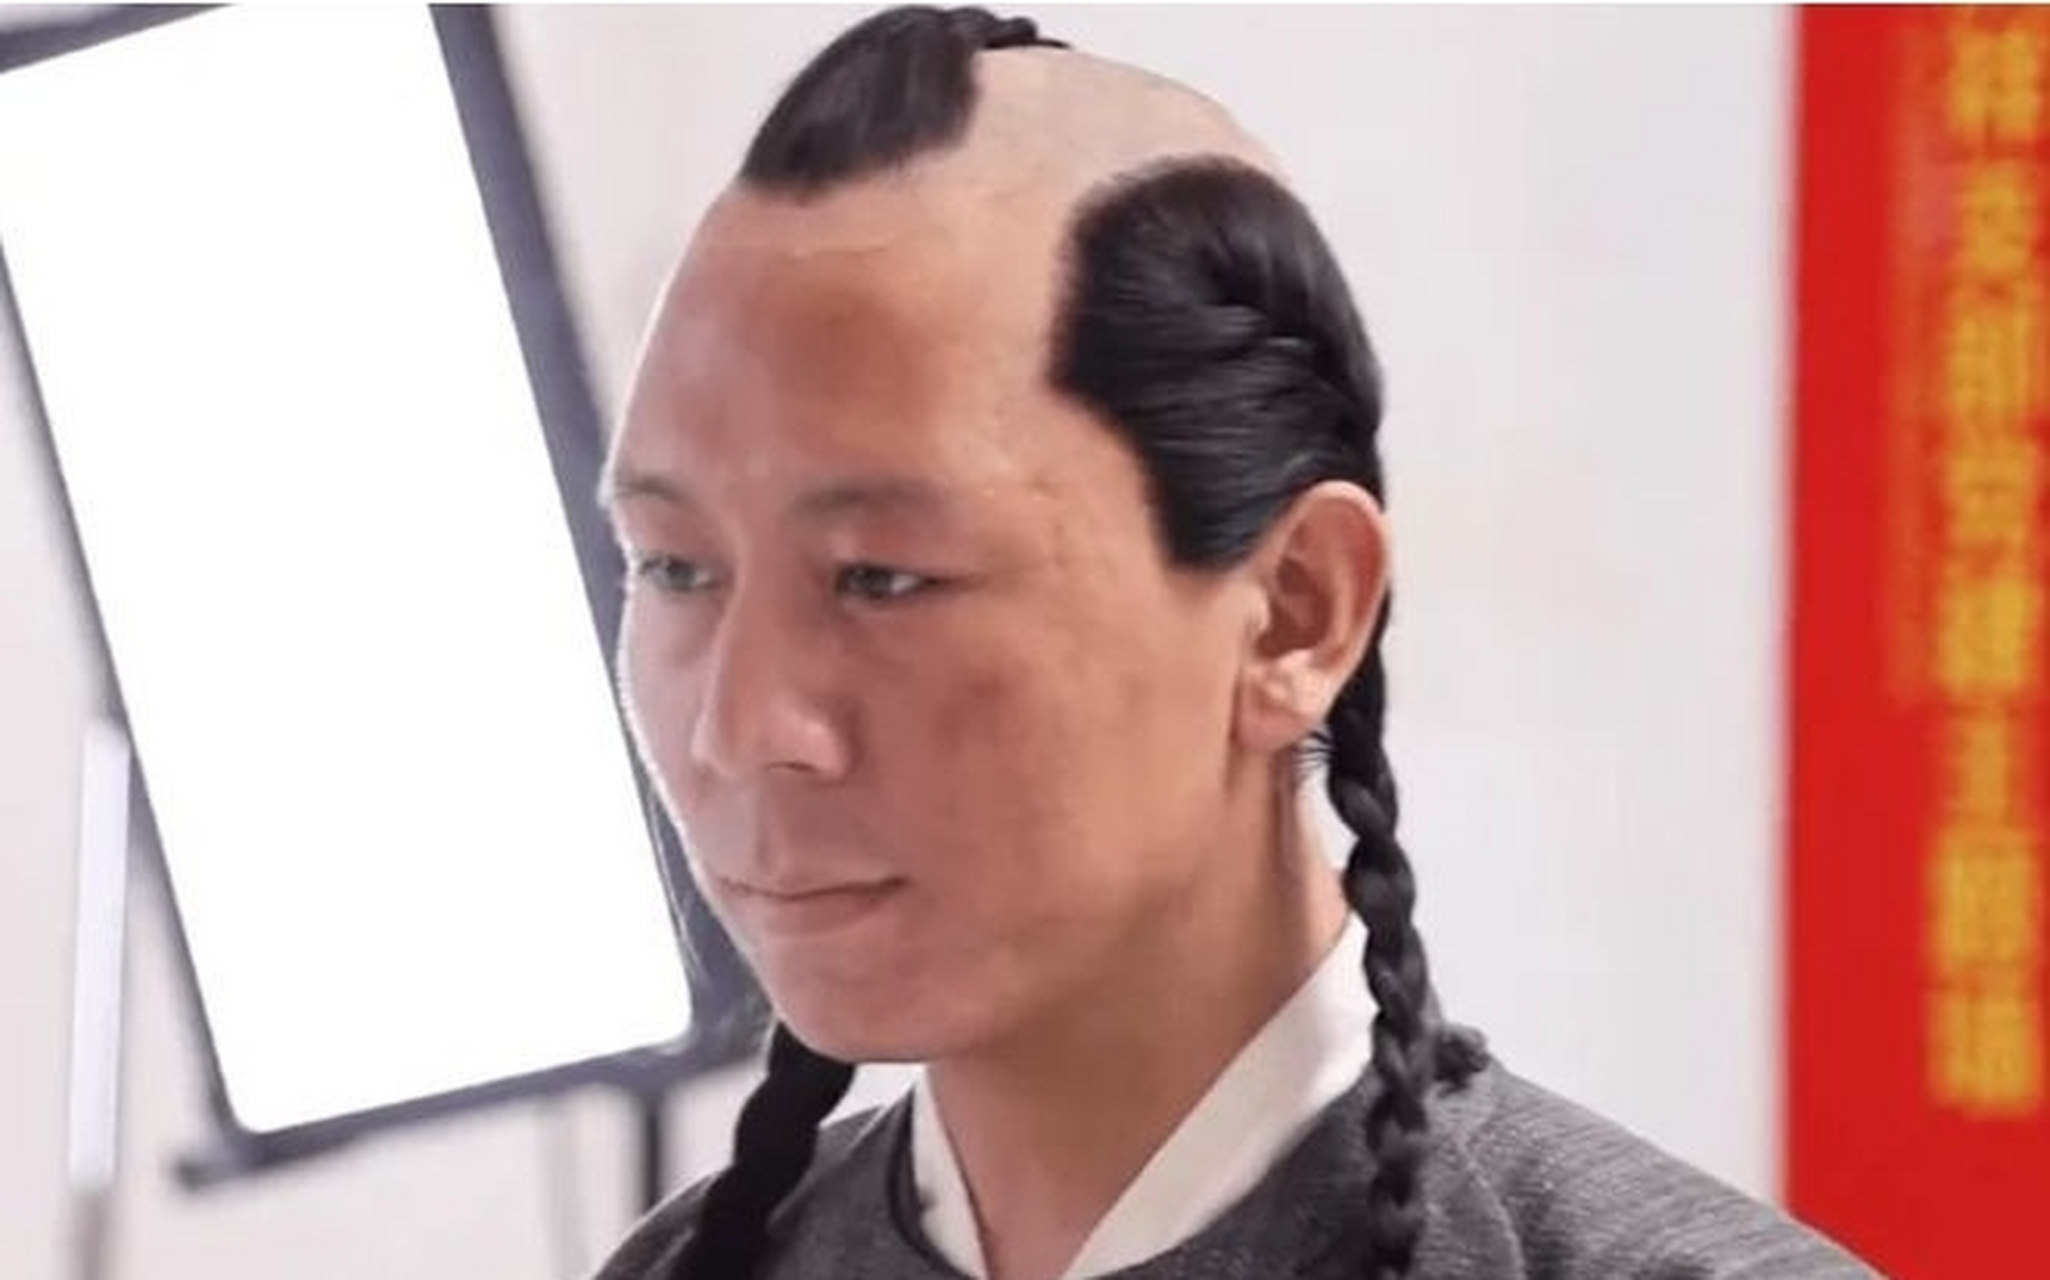 第一张图:是中国影视剧中的契丹人形象这种发型叫做坤发